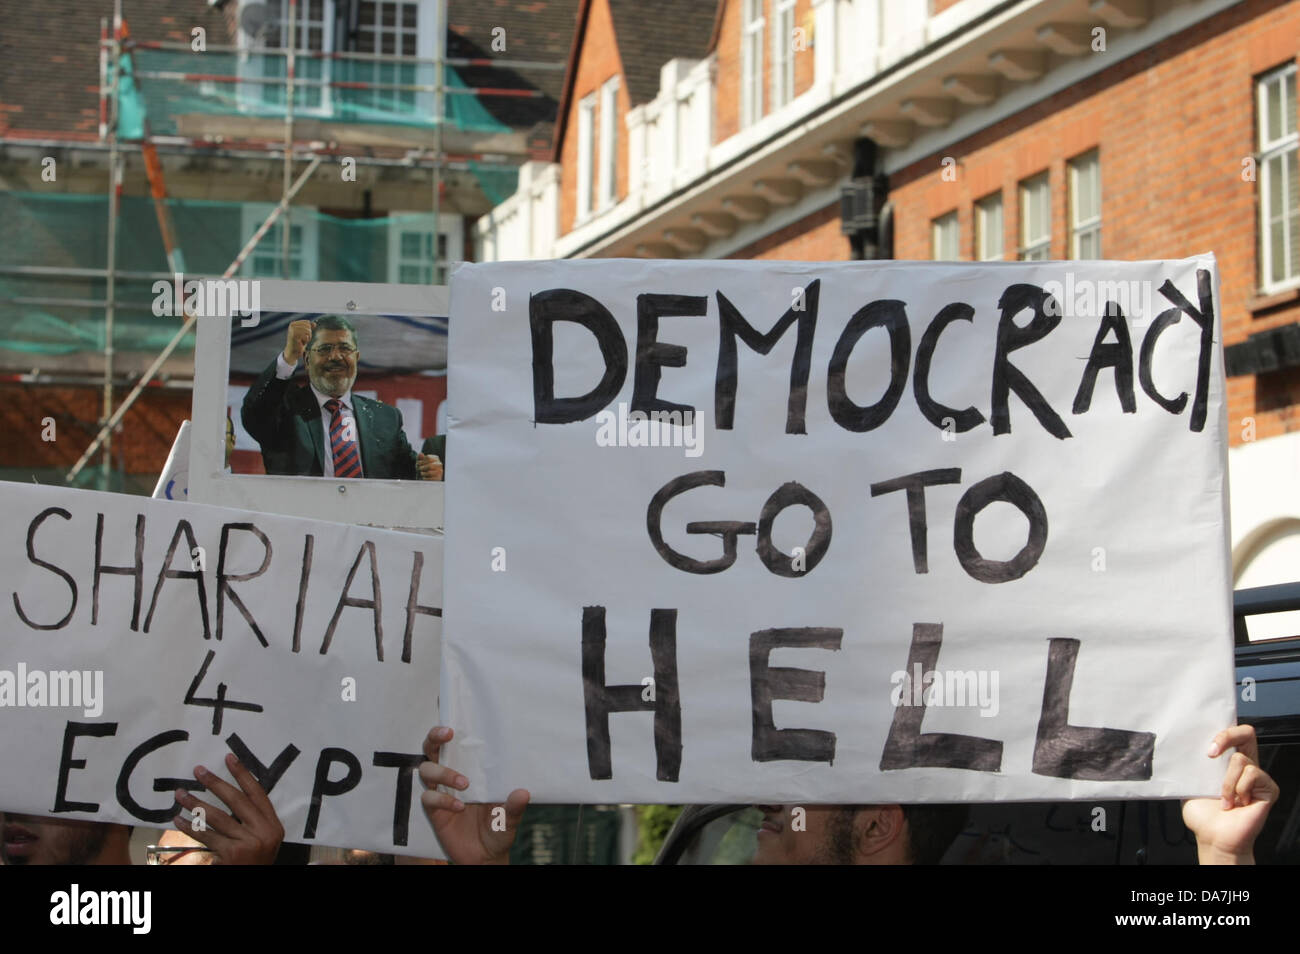 London, UK. 6. Juli 2013. Protest von Anjem Choudary fordern Scharia für Ägypten vor der ägyptischen Botschaft in London organisiert. Bildnachweis: Martyn Wheatley/Alamy Live News Stockfoto